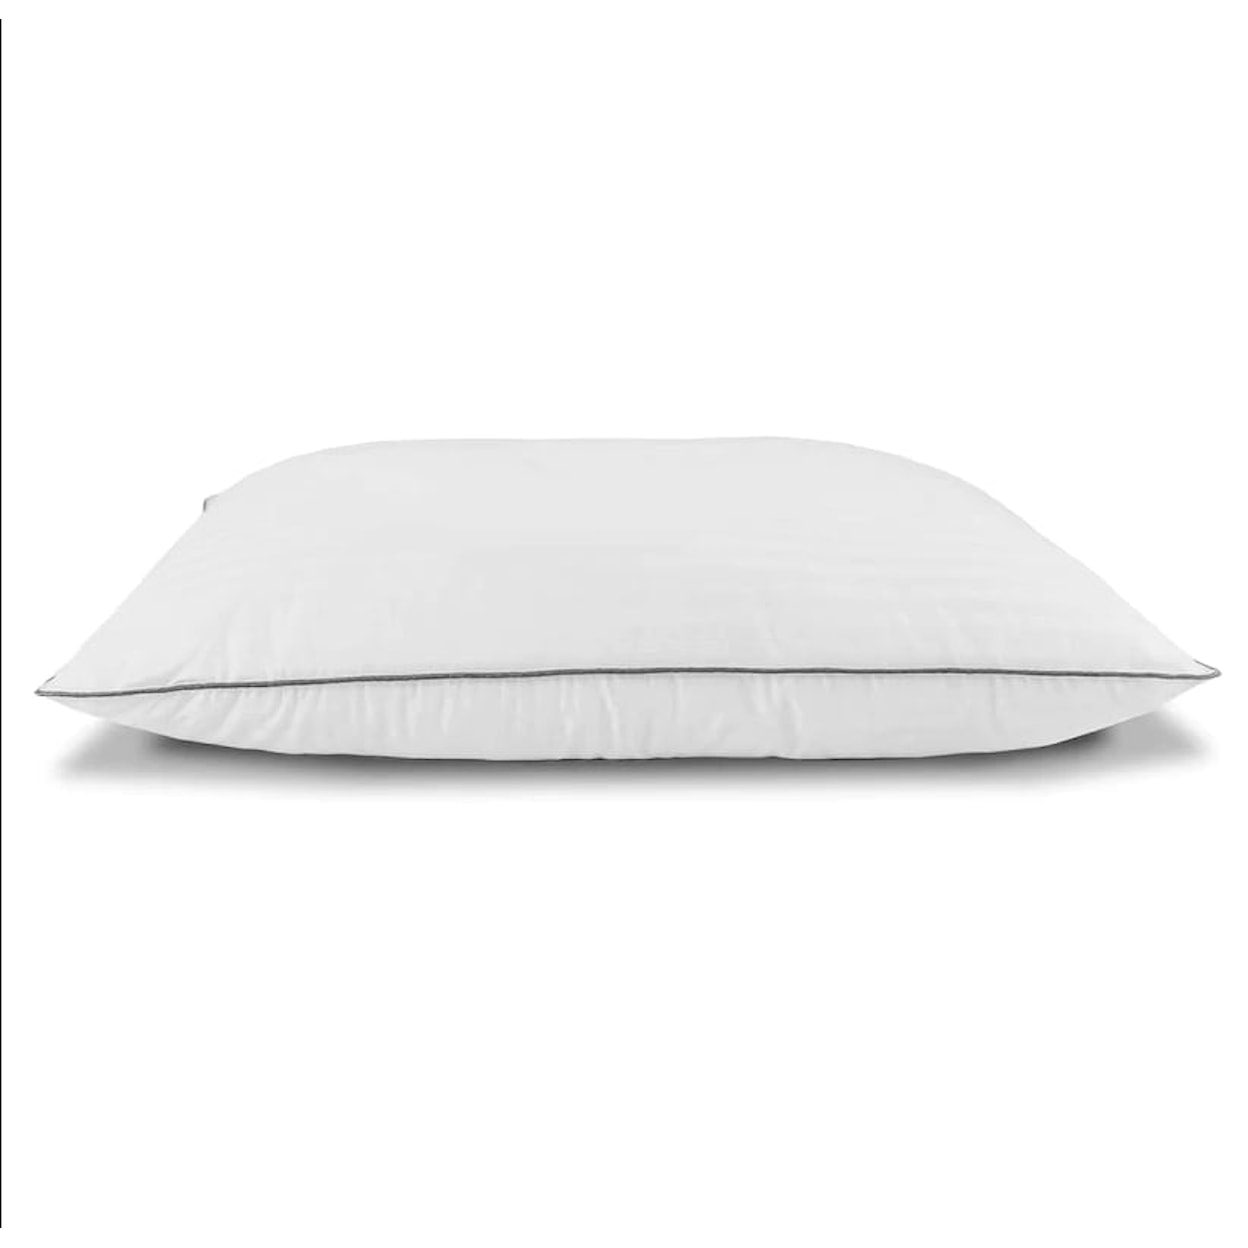 BedTech Pillows DOWN ALTERNATIVE 2 PACK OF PILLOWS |